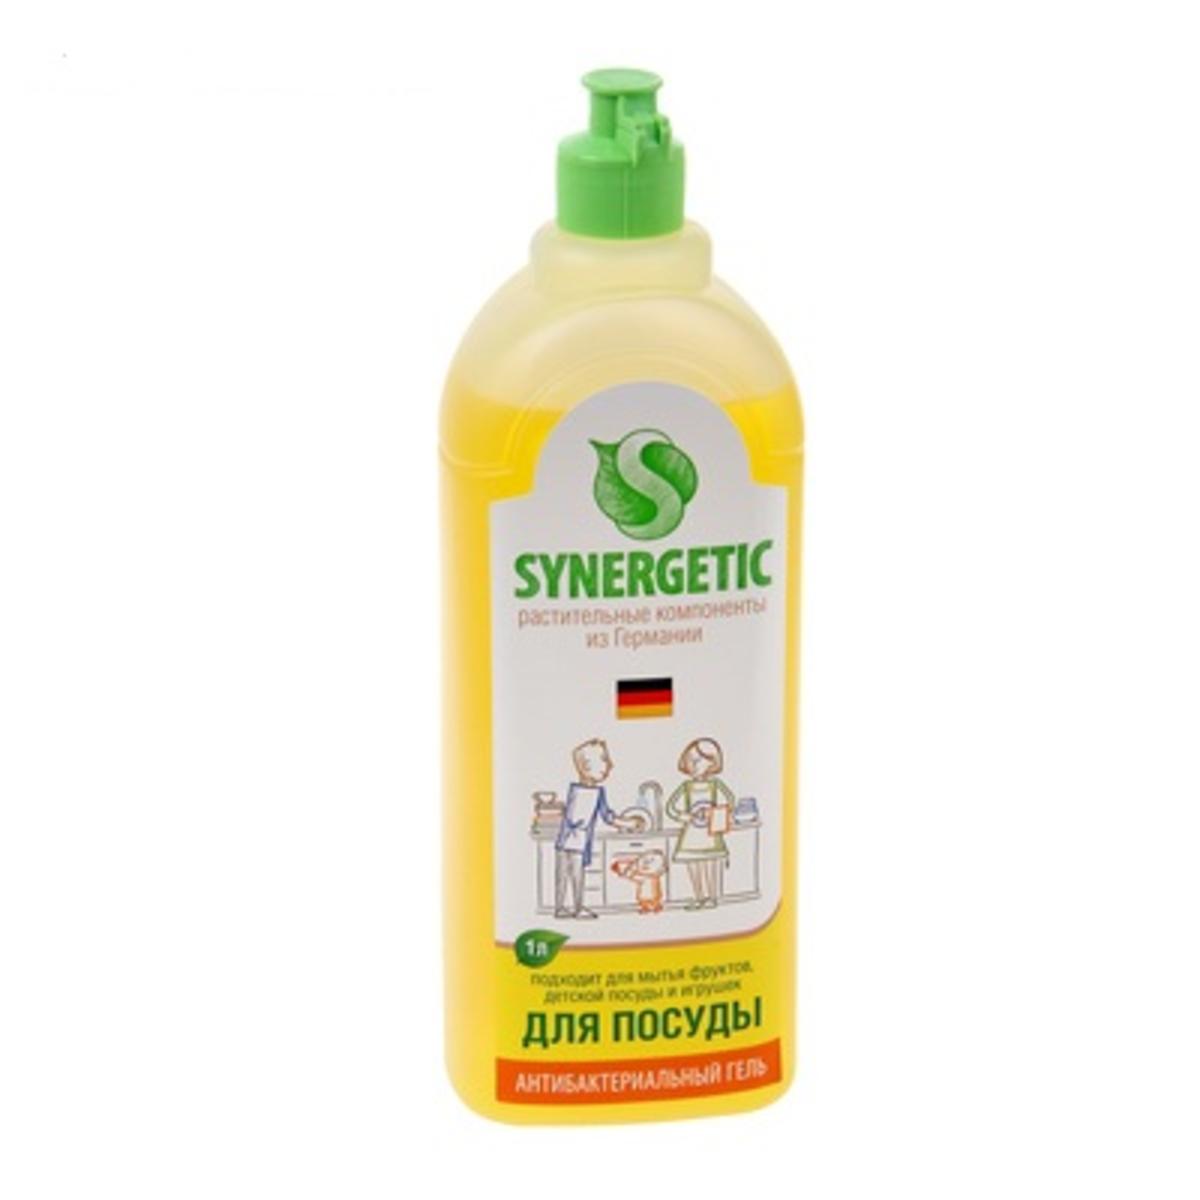 Средство для мытья synergetic 5 л. Synergetic средство для мытья посуды, детских игрушек с ароматом лимона, 1л. Гель для мытья посуды 1л. Synergetic гель д/мытья посуды биоразлагаемый лимон 500гр с дозат..